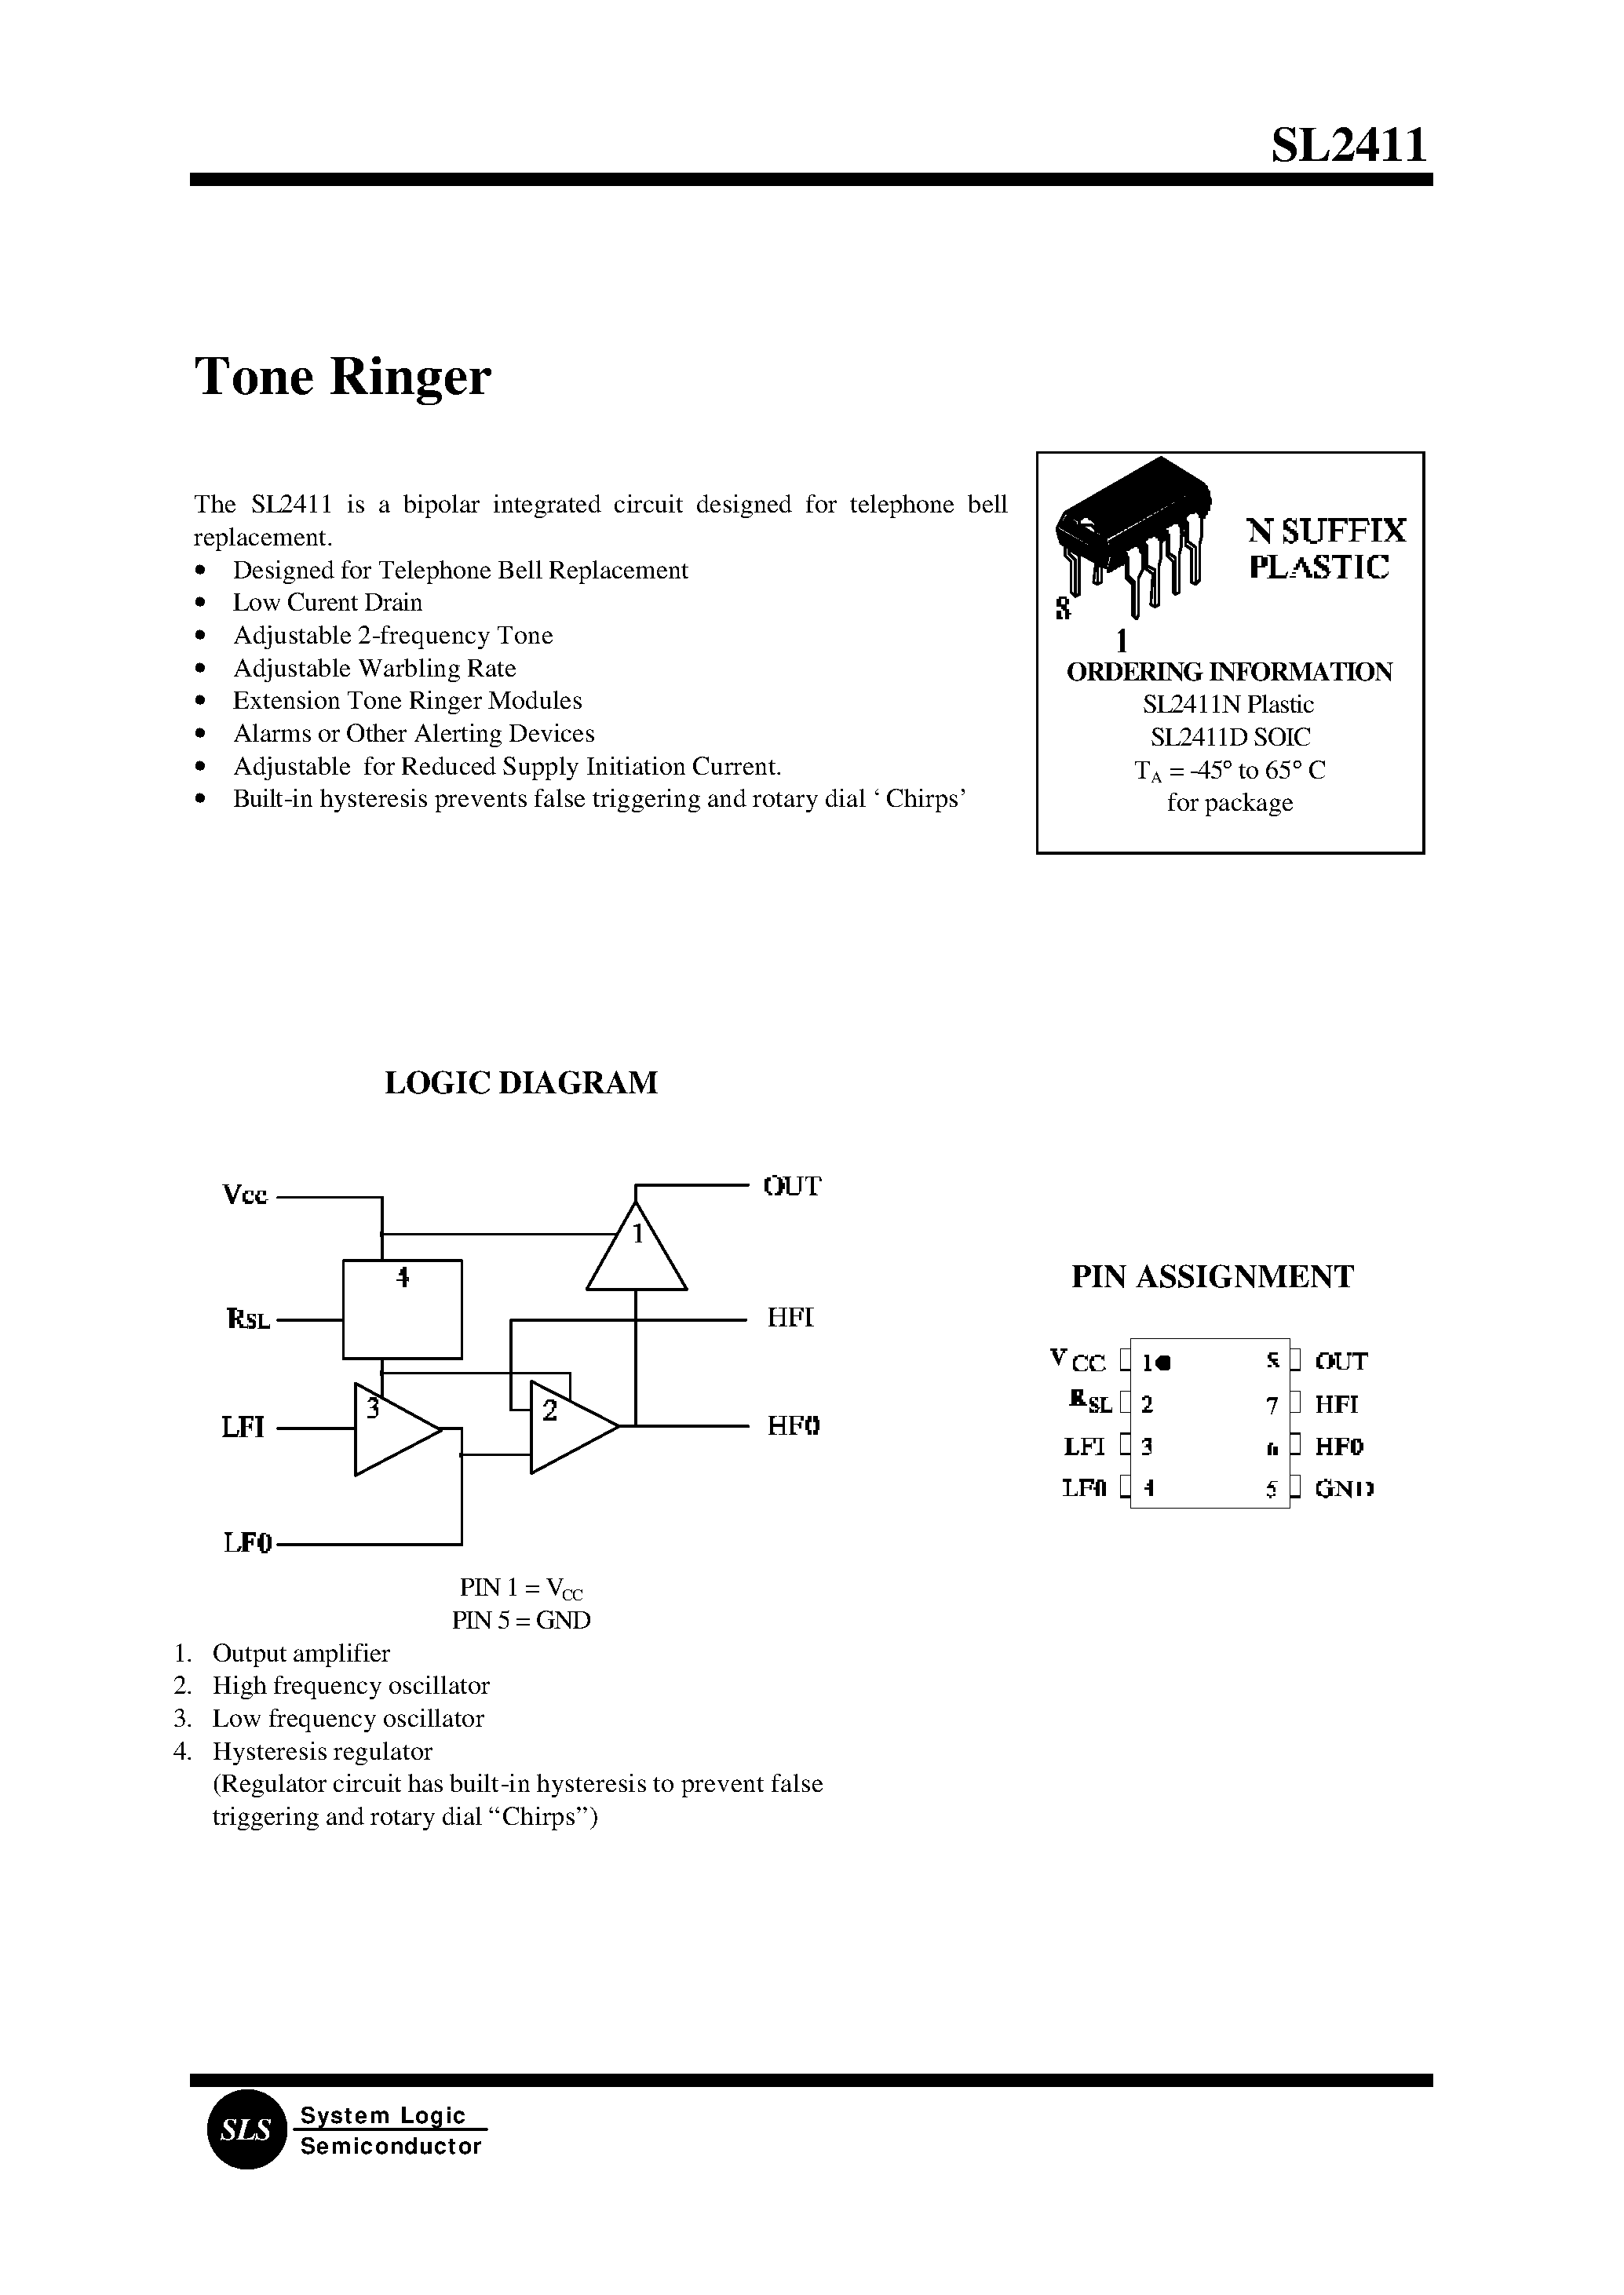 Даташит SL2411 - Tone Ringer страница 1